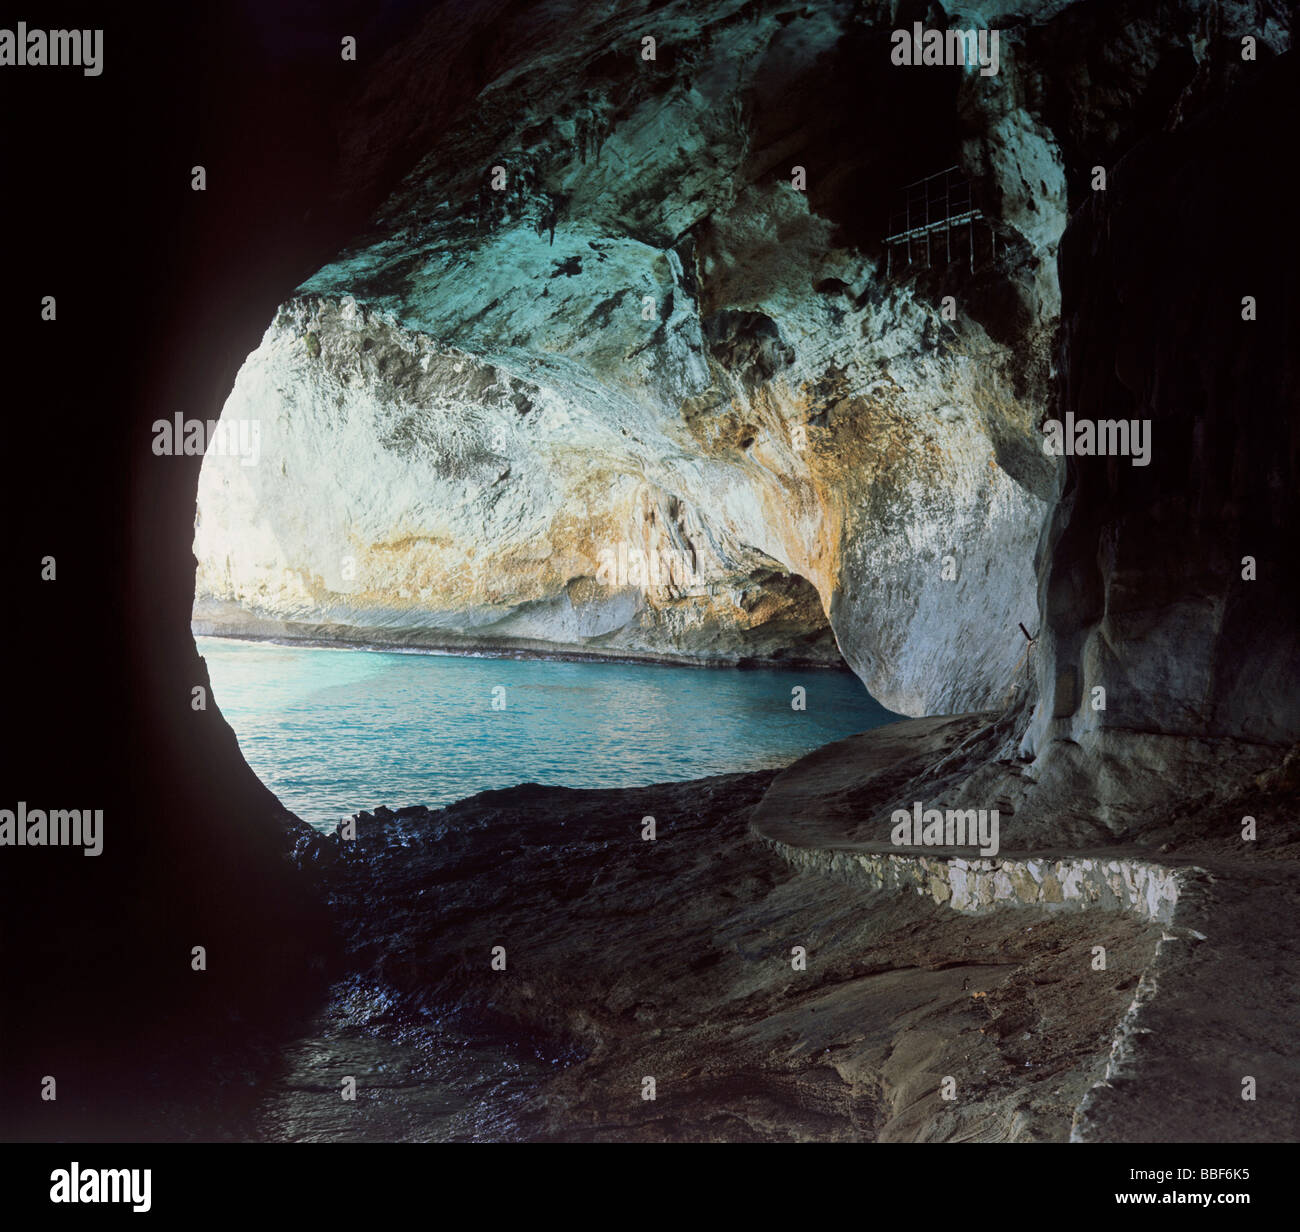 Grotta della grotta del bue marino vicino resort di cala gonone isola di Sardegna Italia Foto Stock